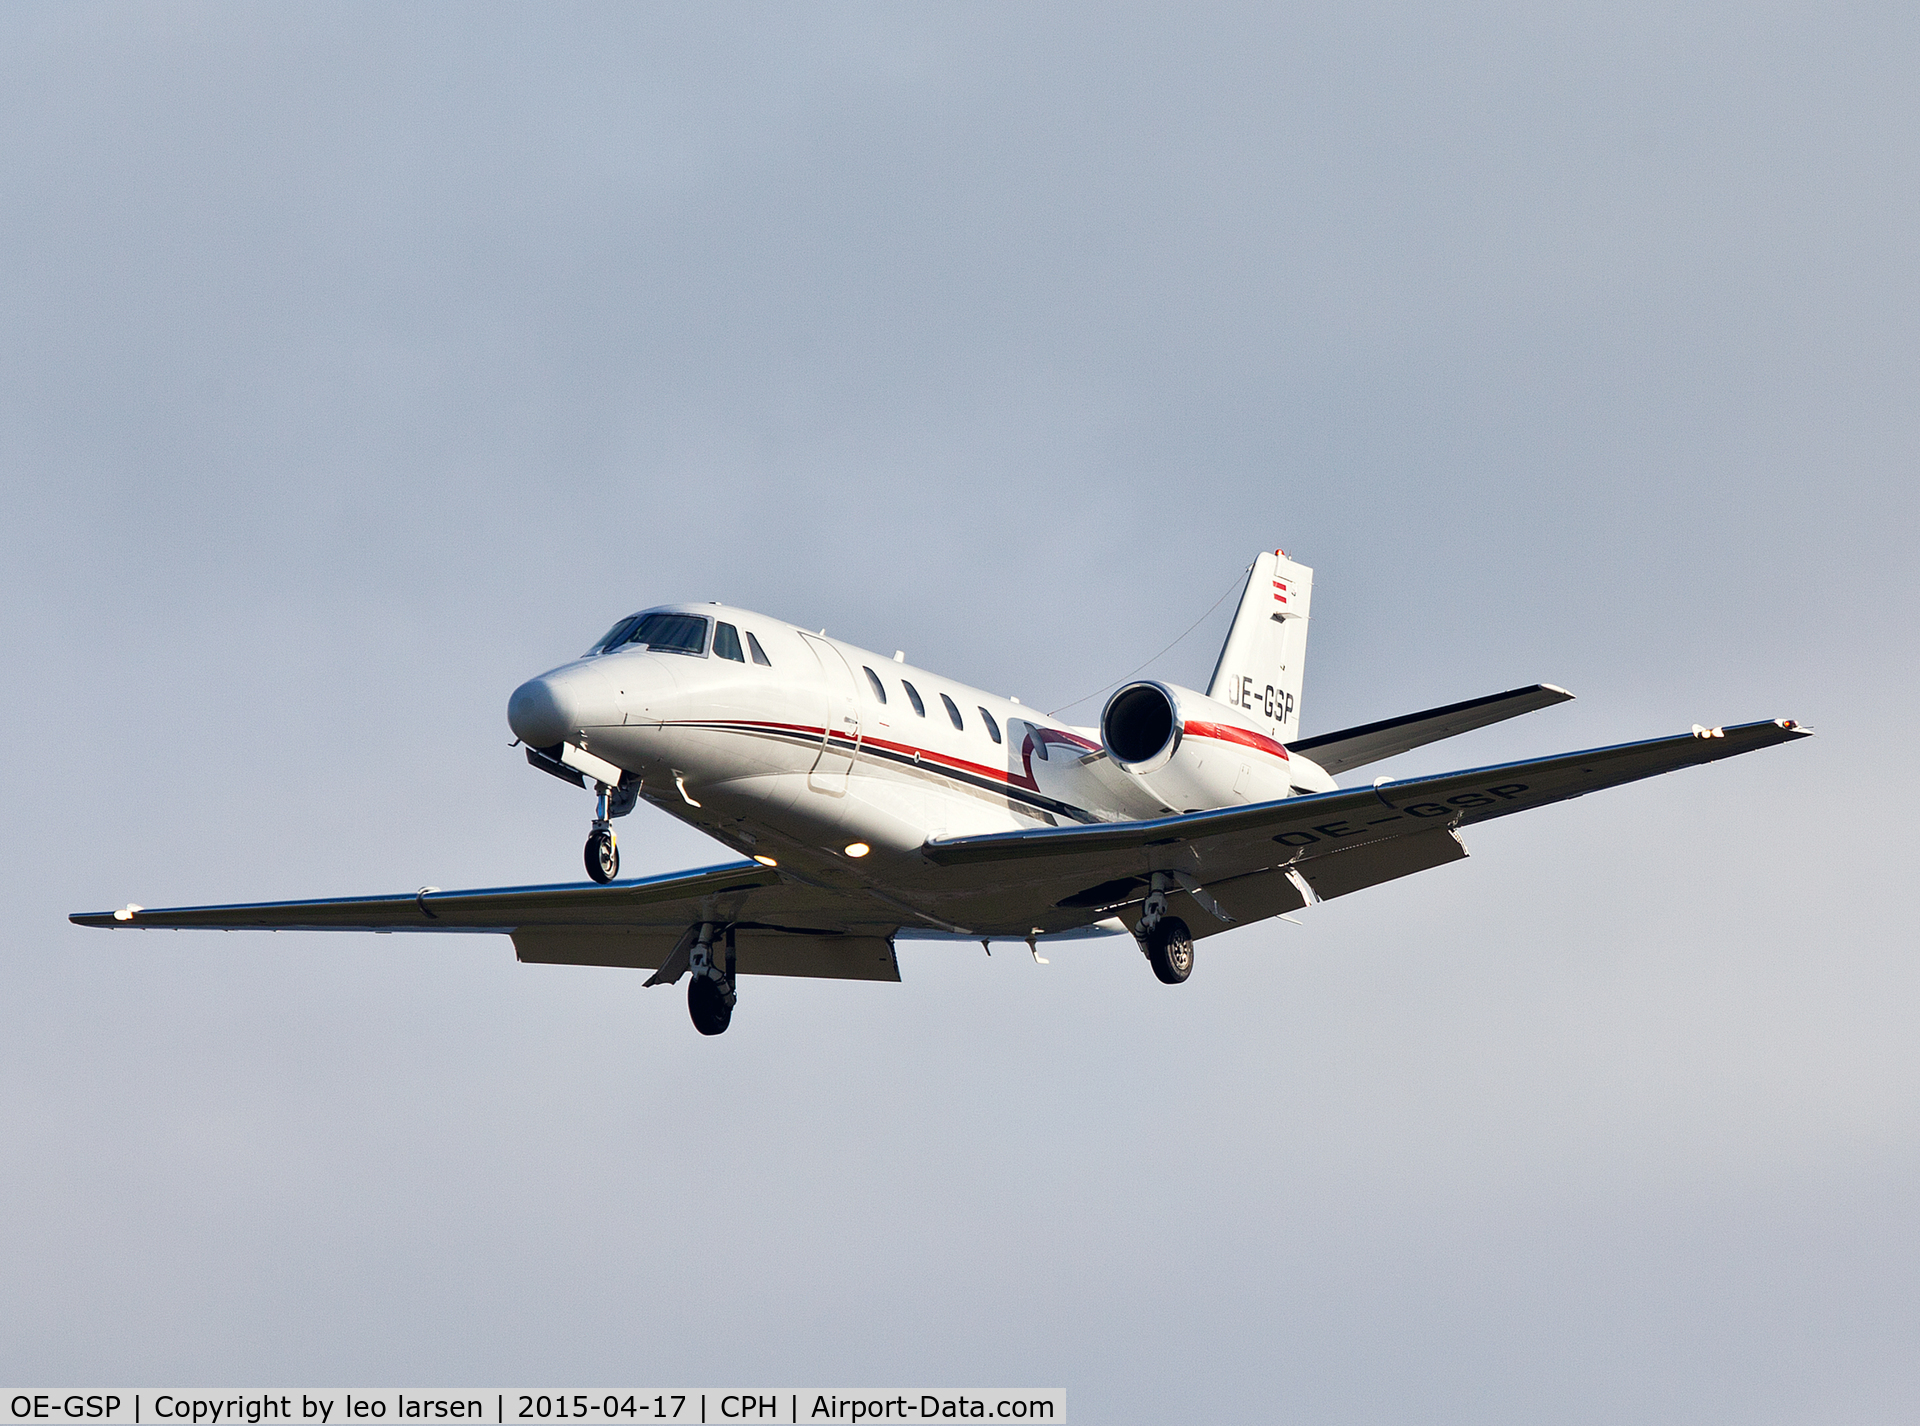 OE-GSP, 2008 Cessna 560XL Citation XLS C/N 560-5756, Copenhagen 17.4.2015